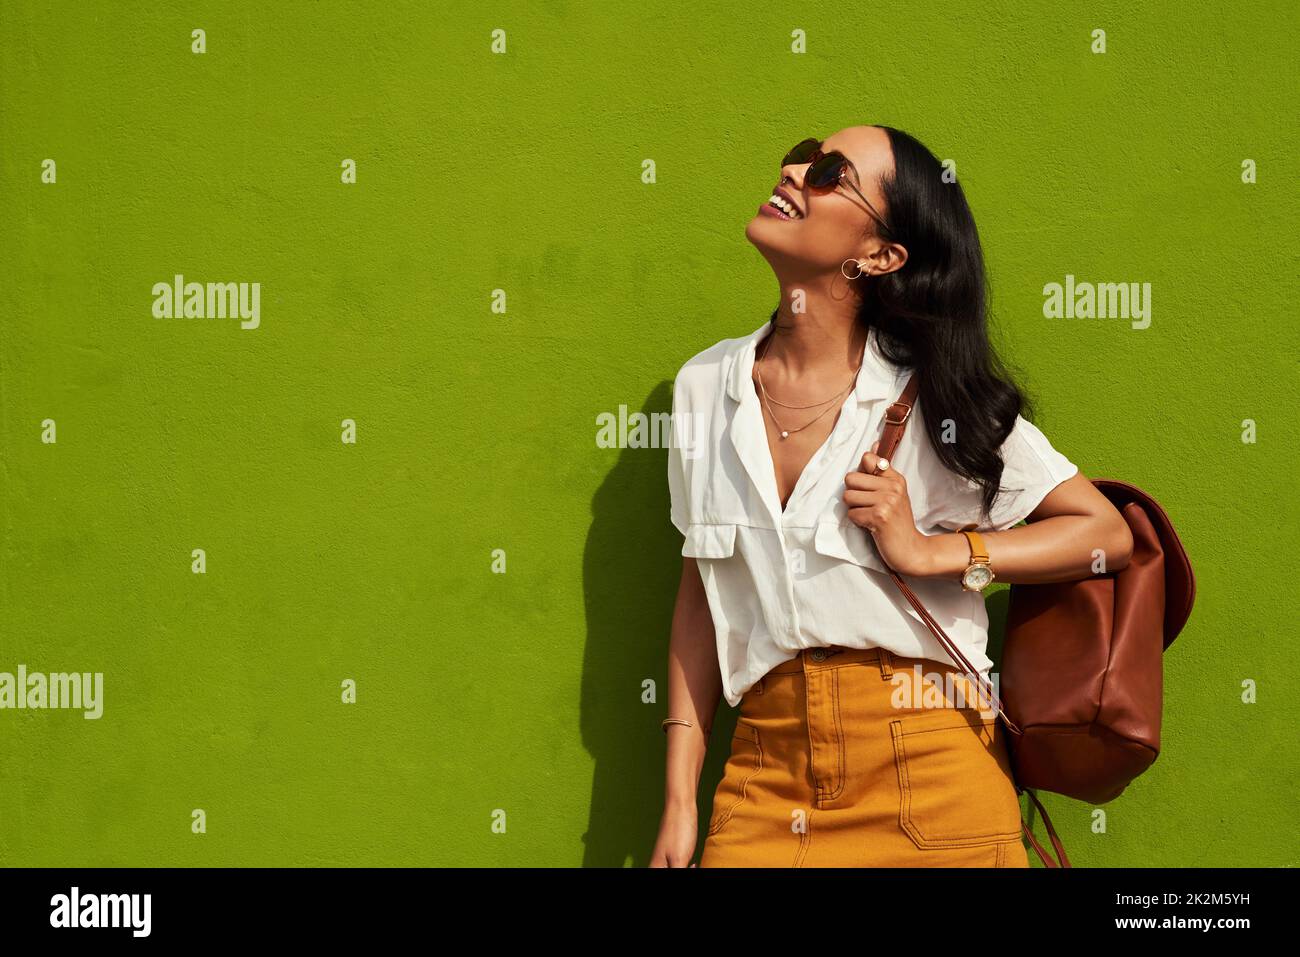 Stilvoll zu bleiben, ist mir wichtig. Gekürzte Aufnahme einer attraktiven jungen Frau mit Sonnenbrille, während sie allein vor einem grünen Hintergrund in der Stadt steht. Stockfoto